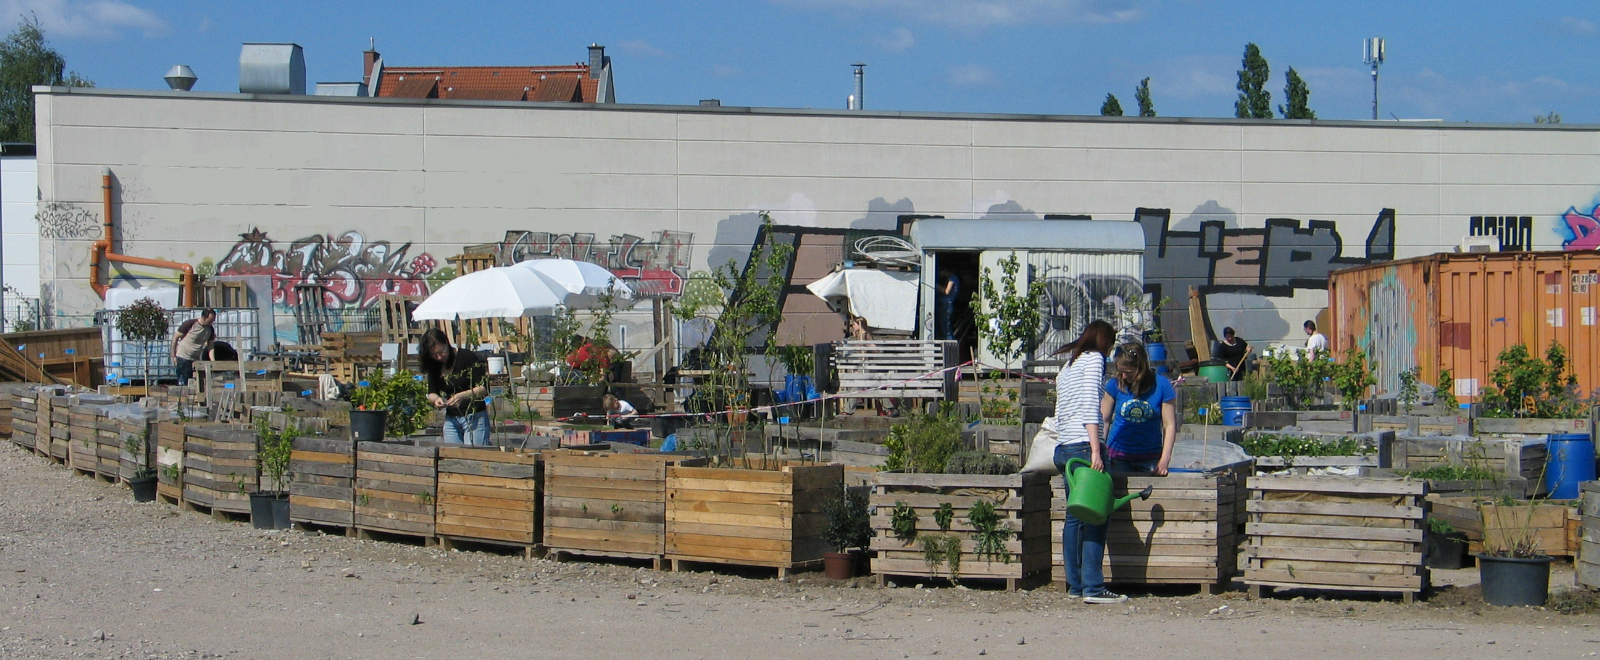 GärtnerInnen im Gemeinschaftsgarten Gartenbahnhof Ehrenfeld im April 2014 bei der Arbeit